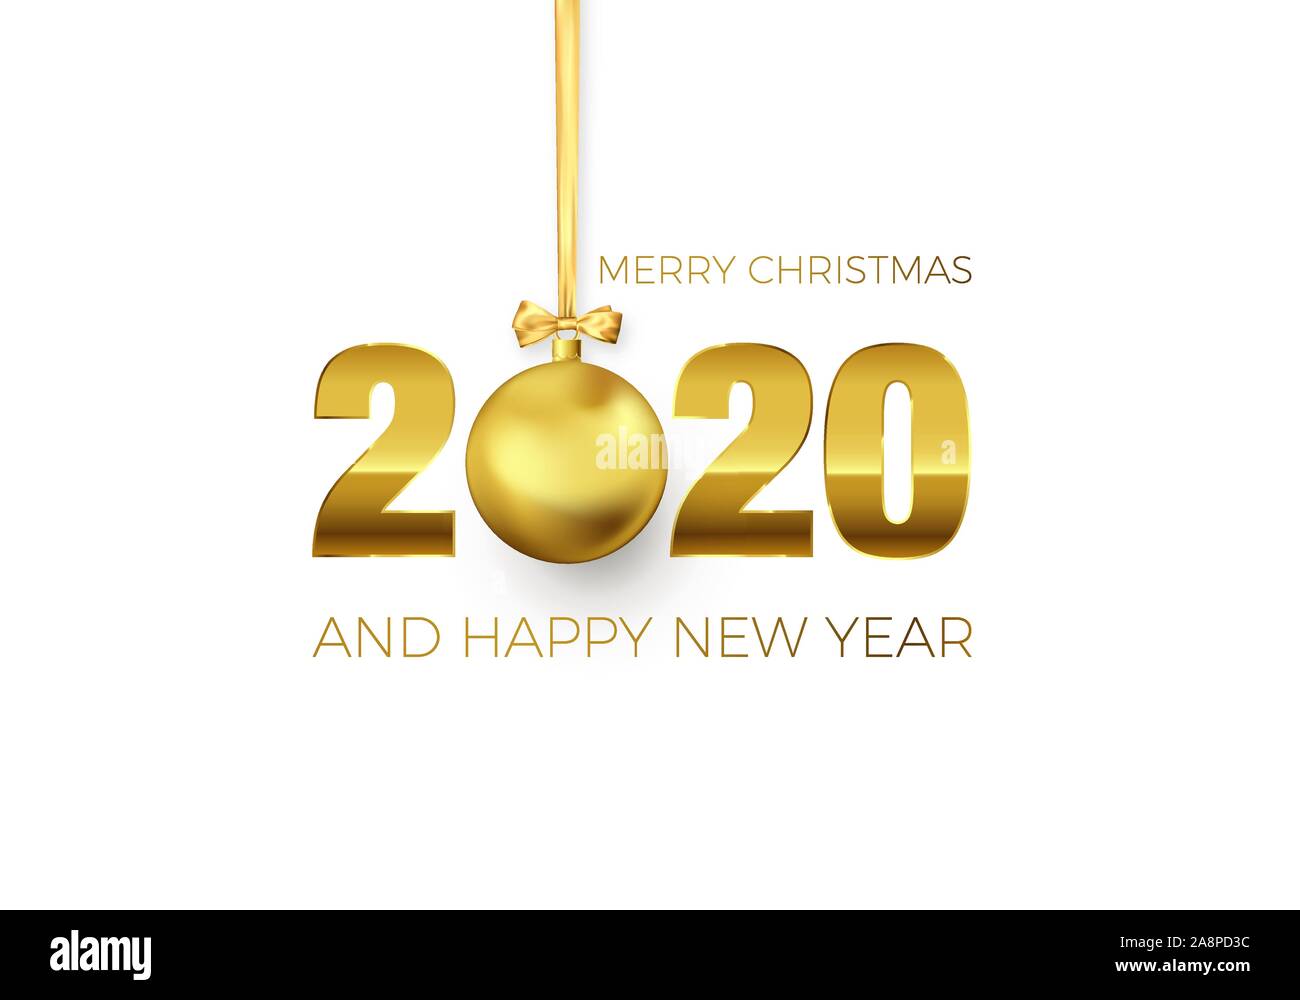 Nouvelle Année Poster avec texte d'accueil. Golden Christmas ball au lieu de zéro en 2020. Maison de vacances élément de décoration pour la Bannière ou invitation. Vector Illustration de Vecteur